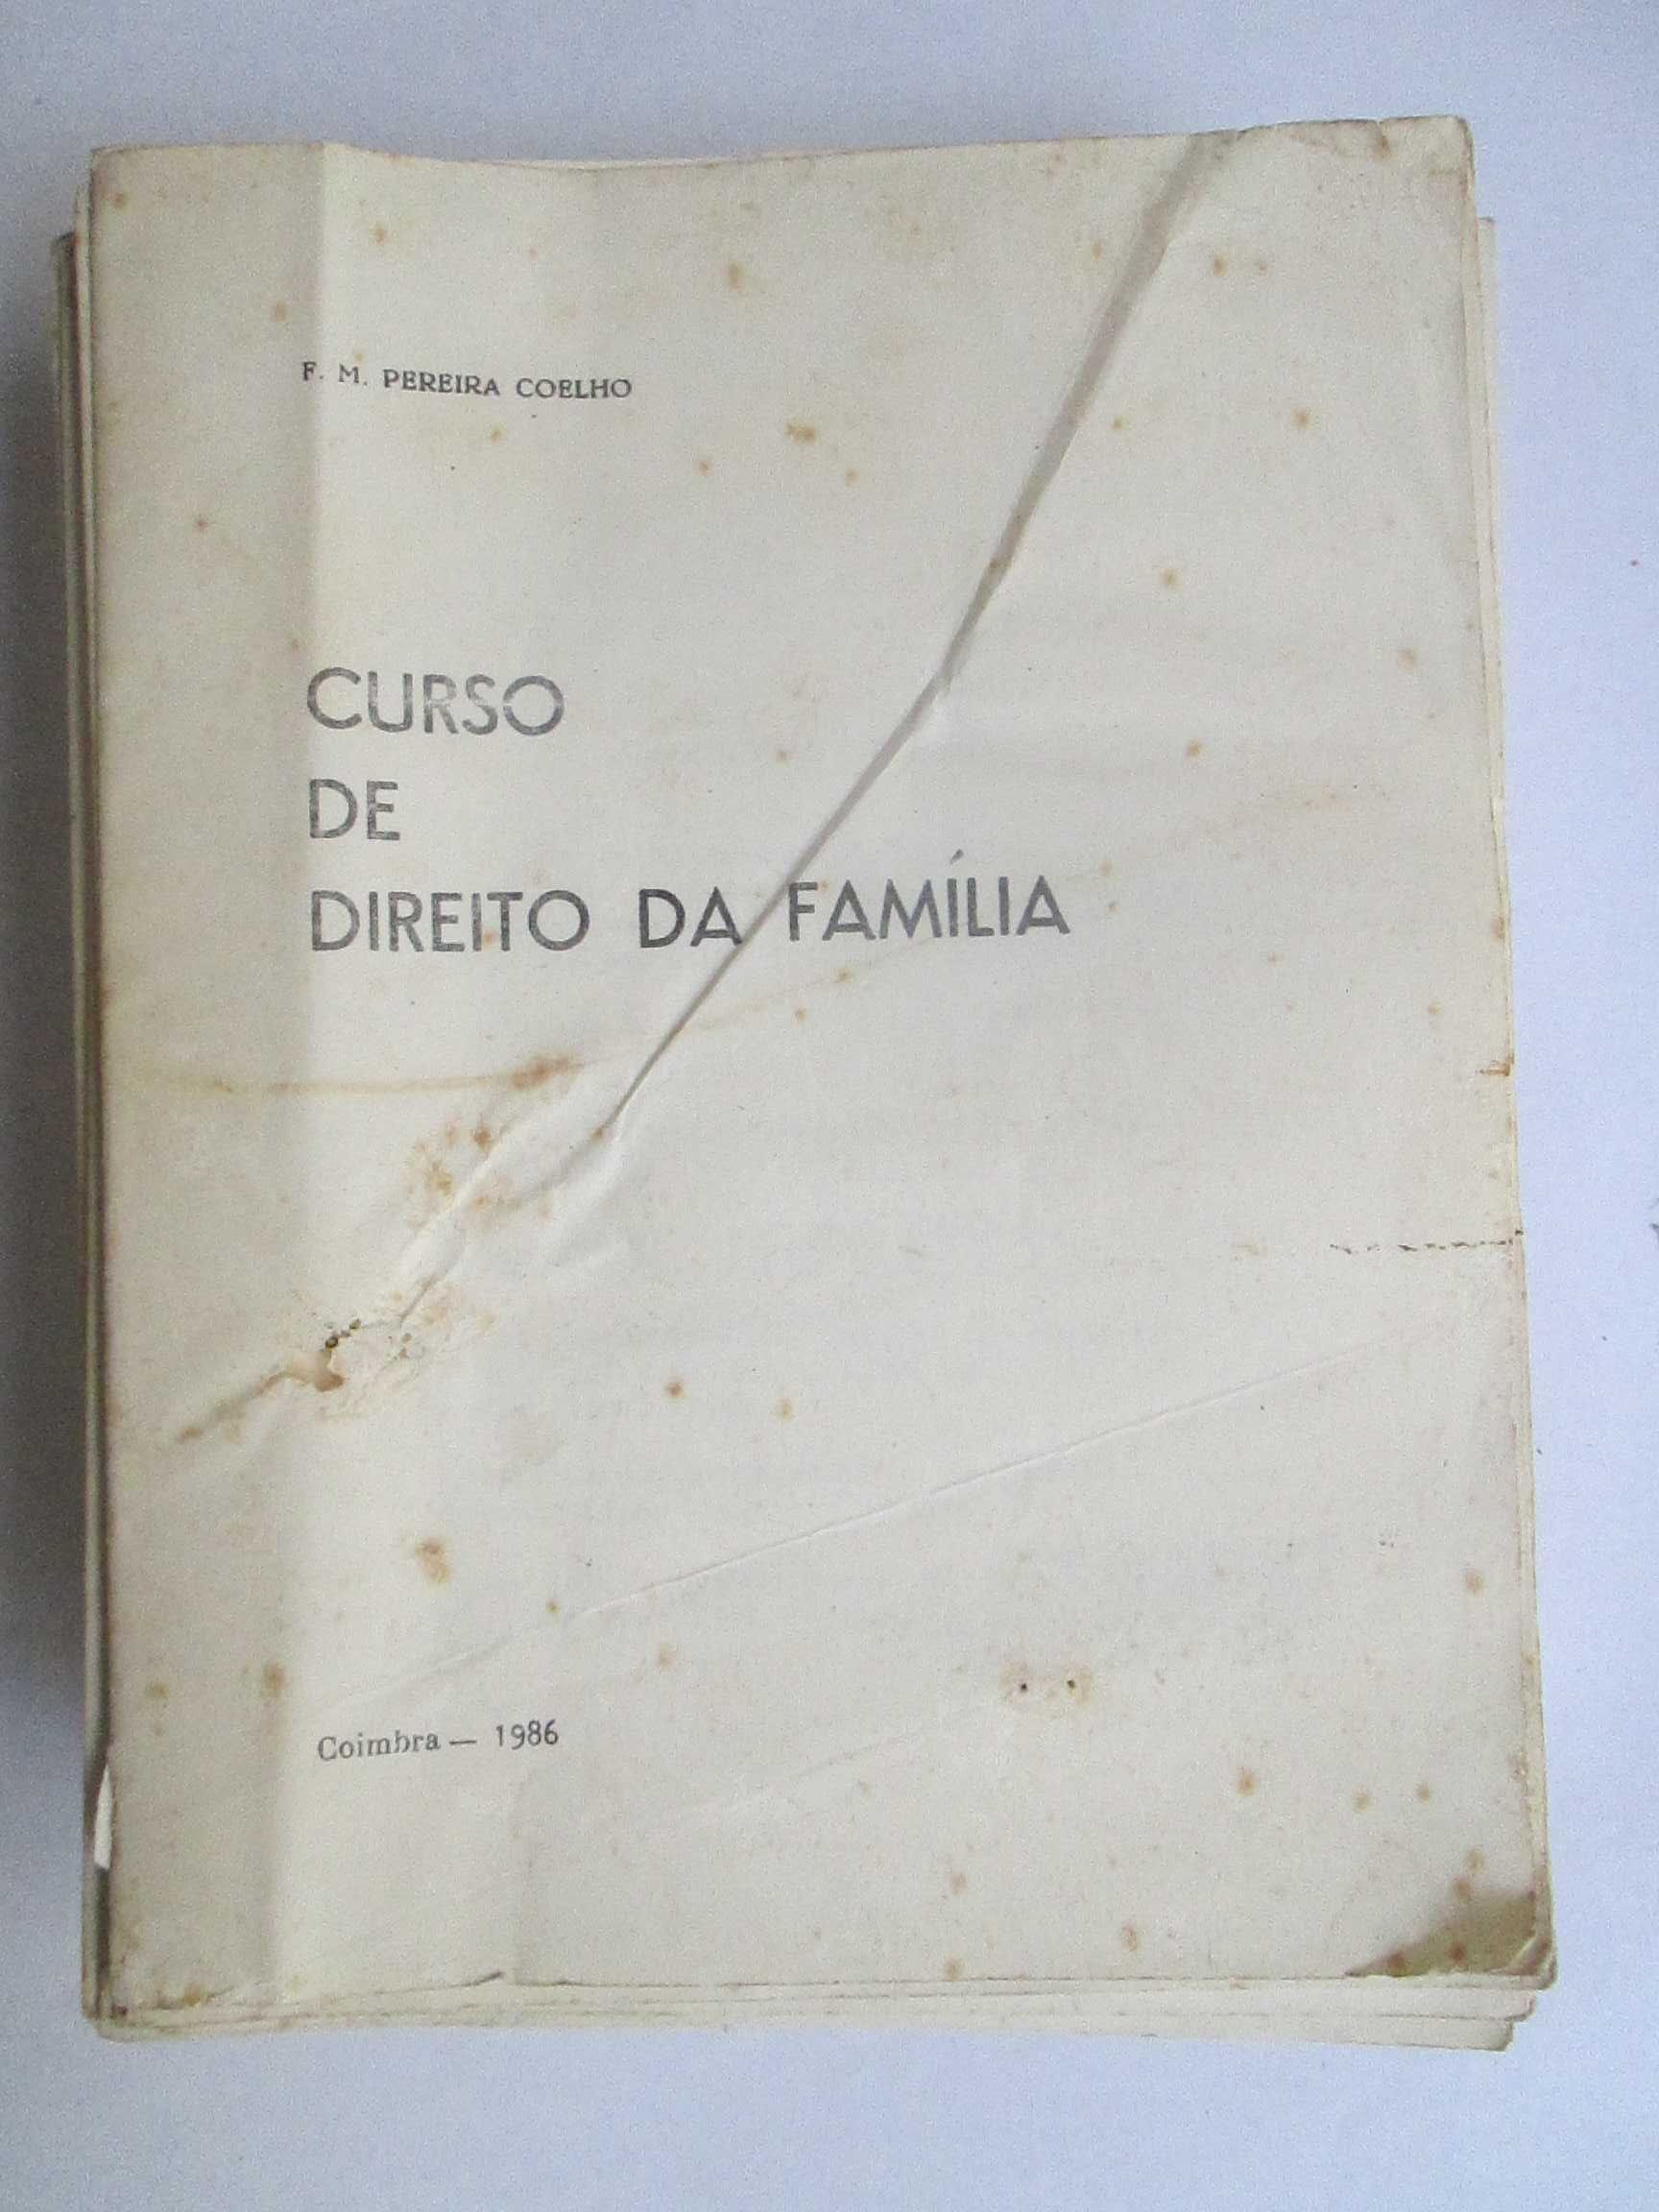 Direito da Família, sebenta de F. M. Pereira Coelho